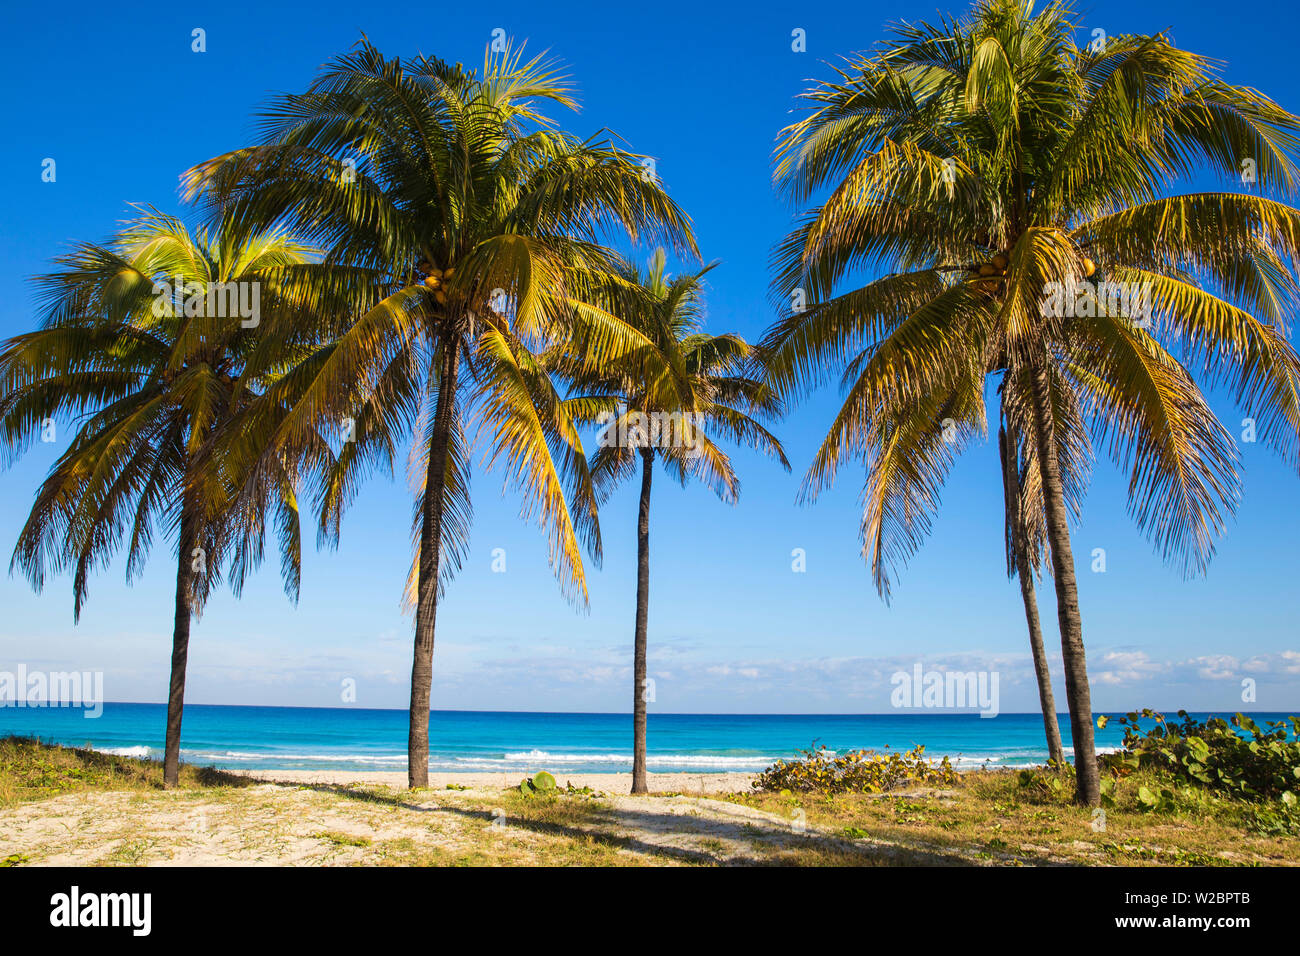 Cuba, Varadero, Palm trees on Varadero beach Stock Photo